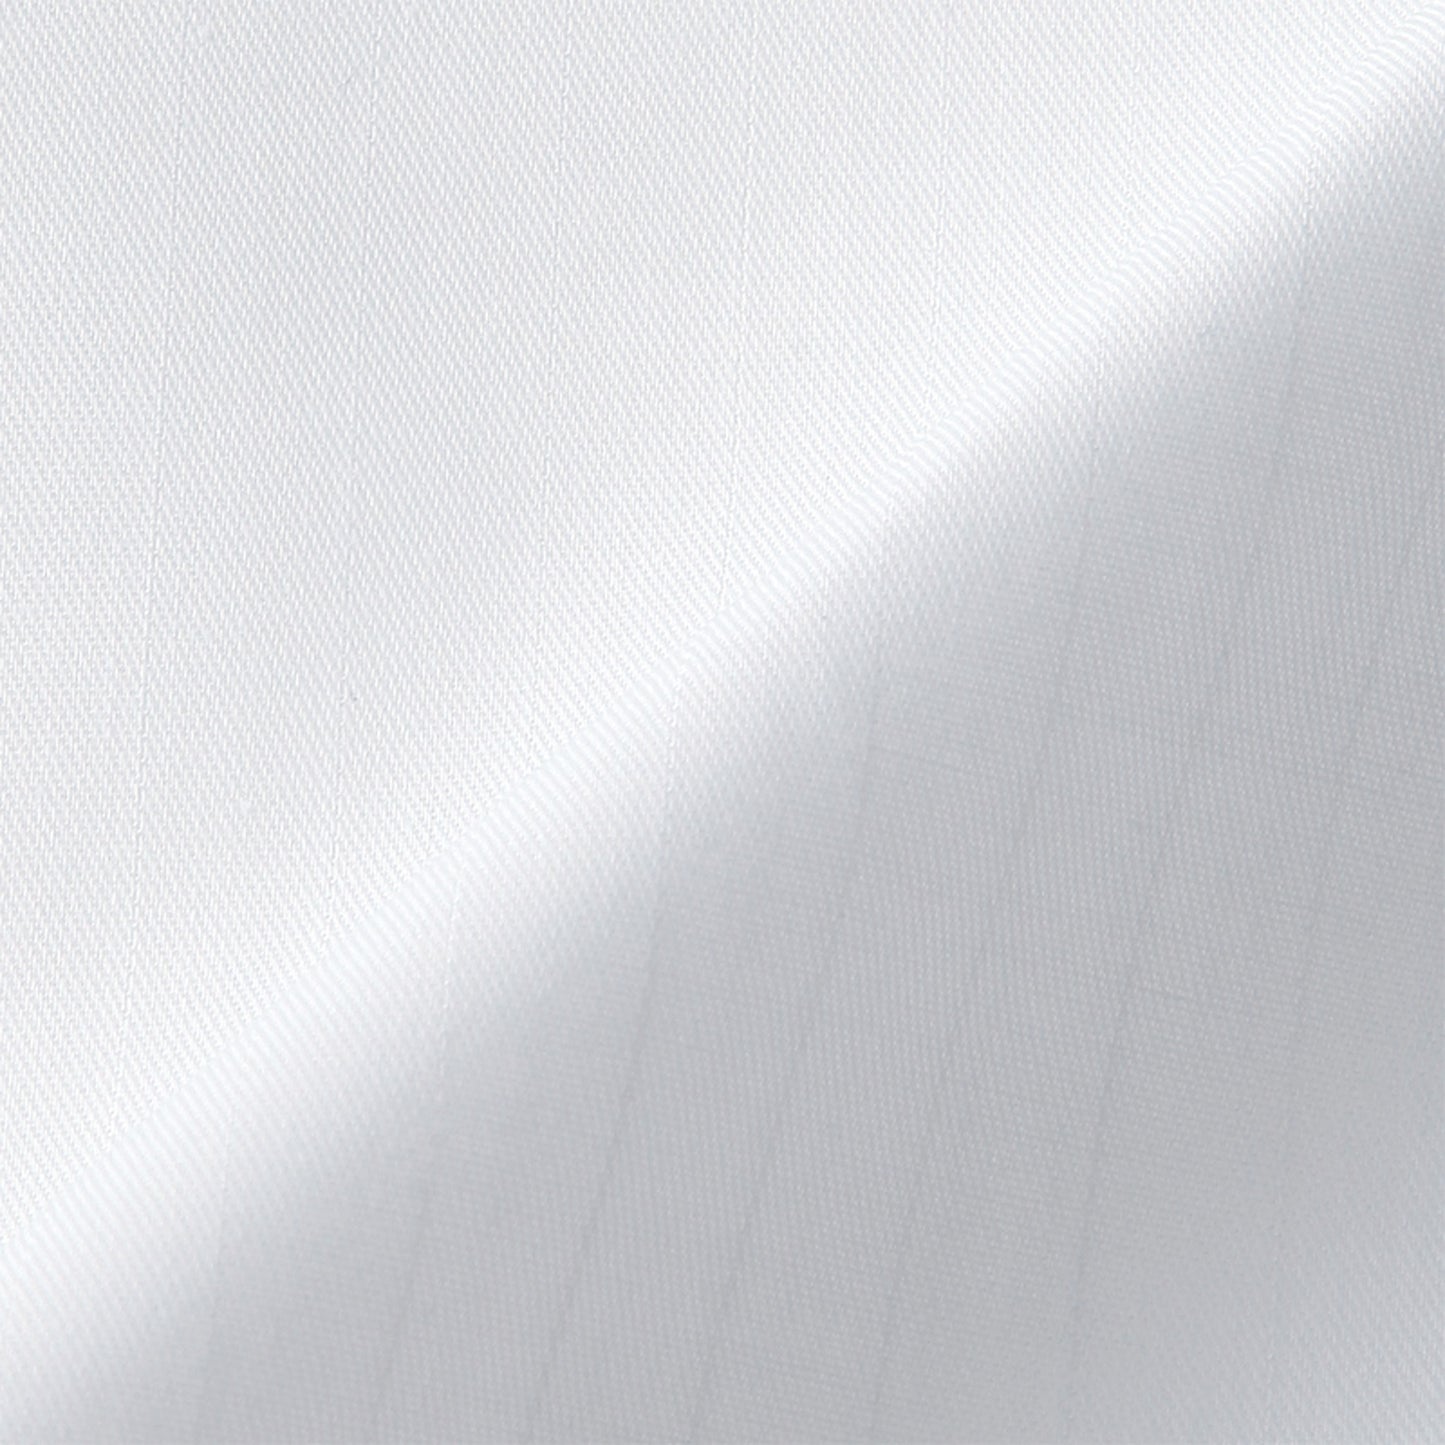 サンエス 食品工場用白衣 フードマイスター 清涼素材 ゆったりコートタイプ 【男女共用コート】 FX70970R